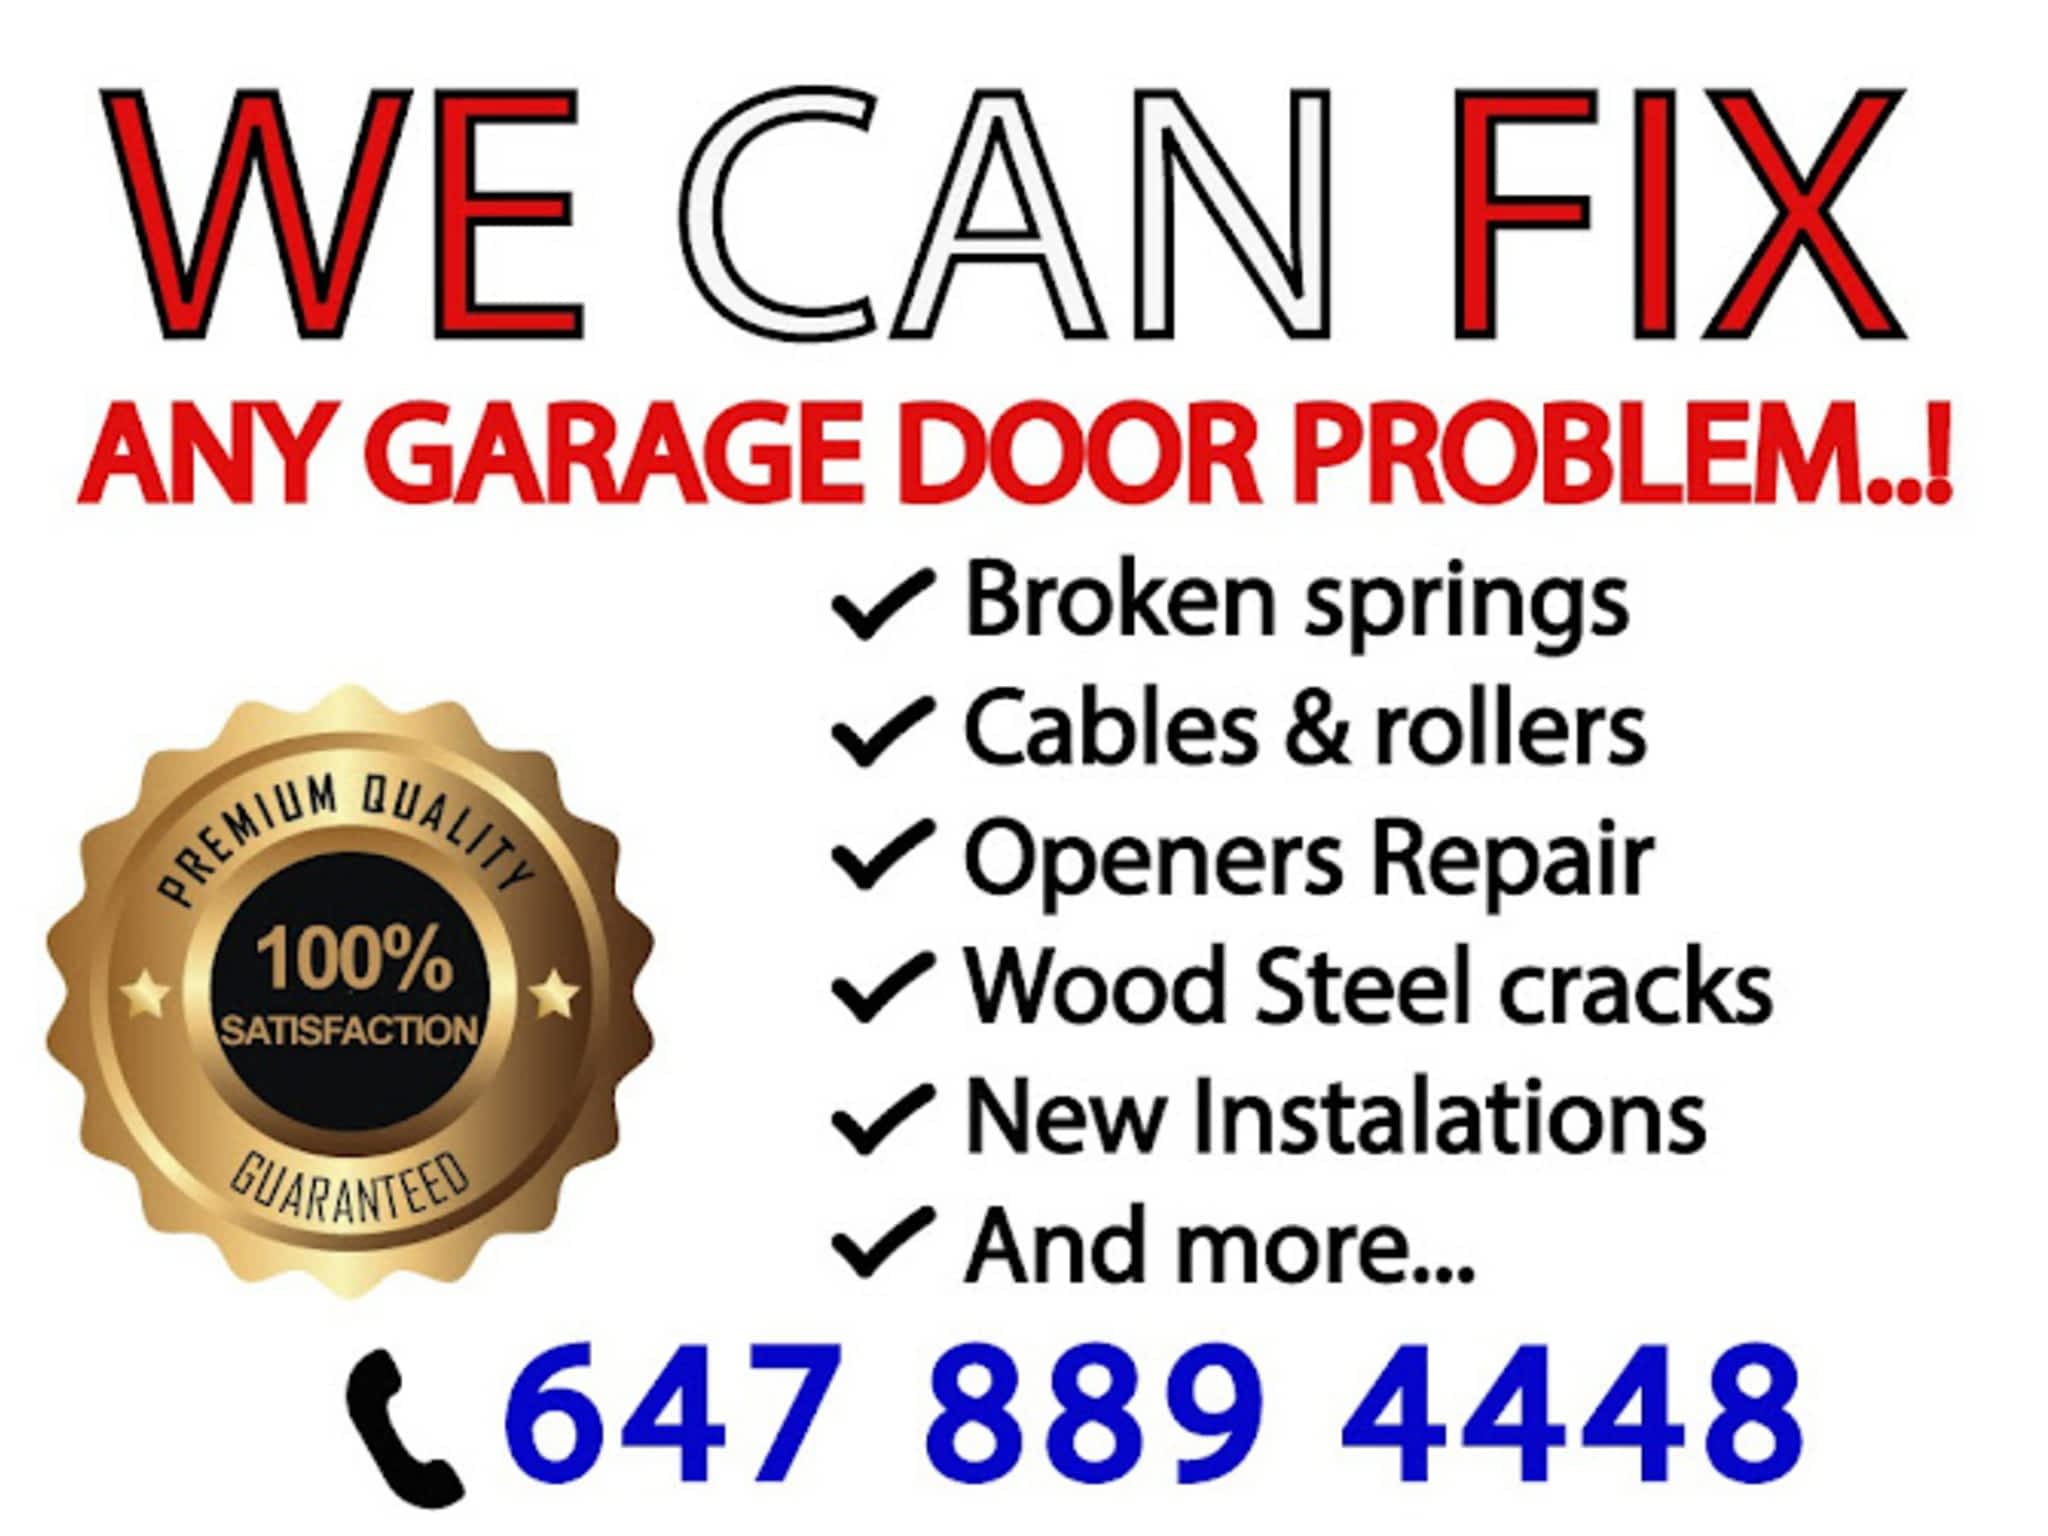 photo CA Garage Doors Ltd